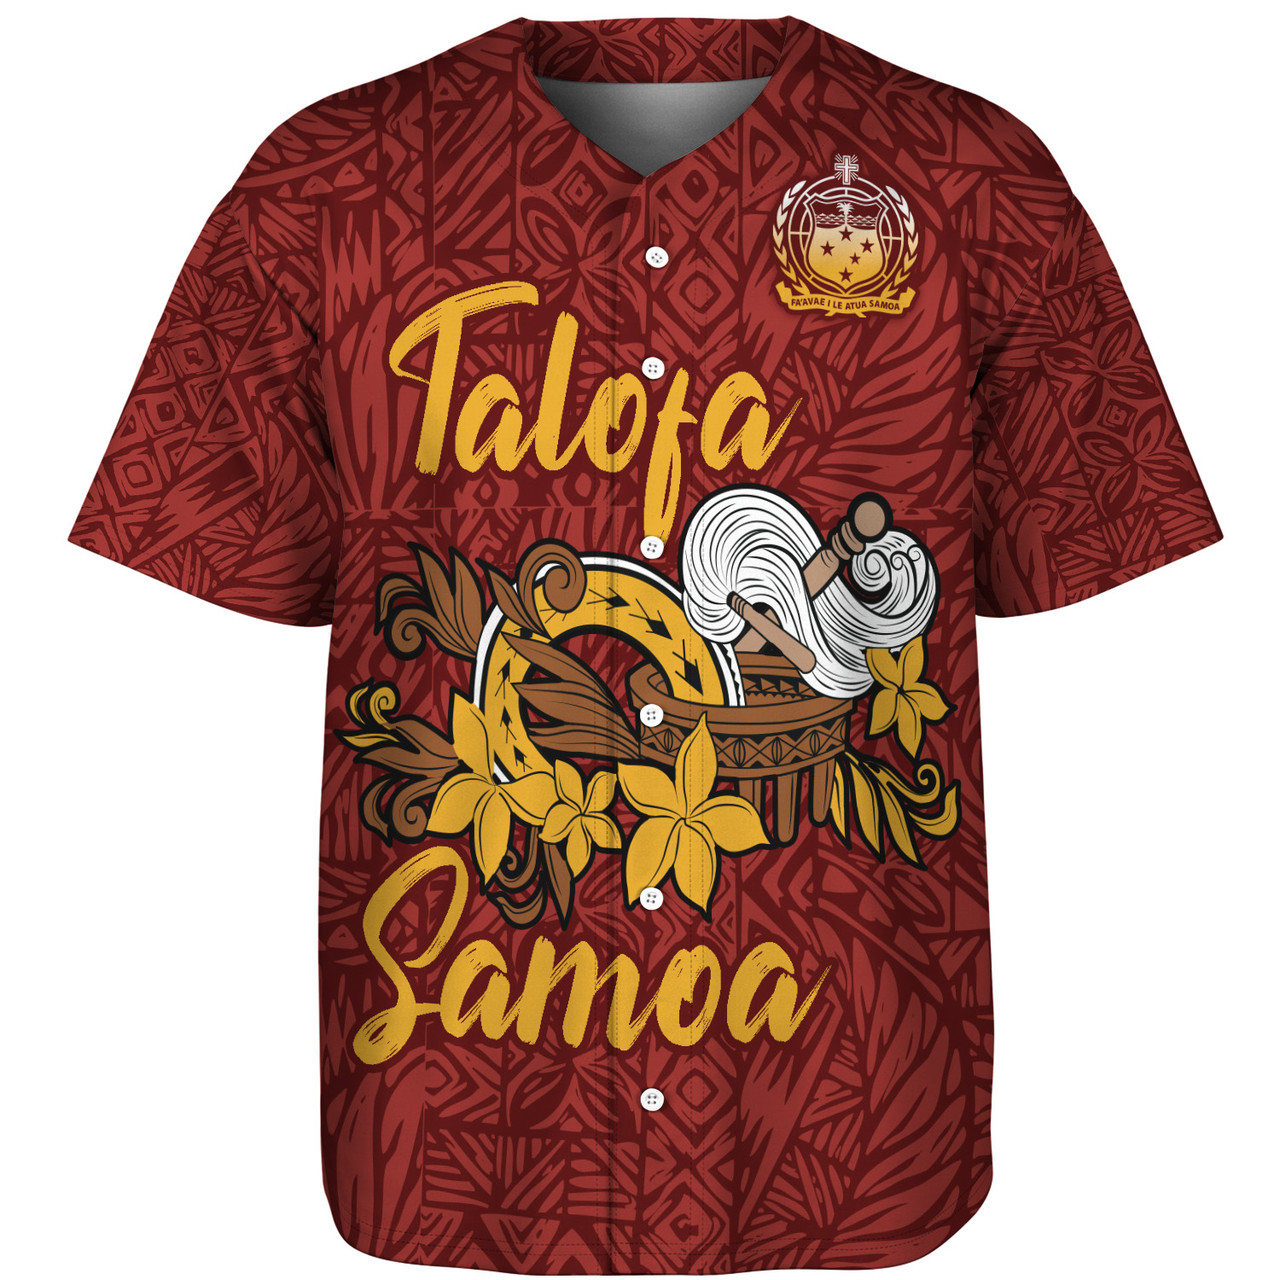 Samoa Baseball Shirt Talofa Samoa Style